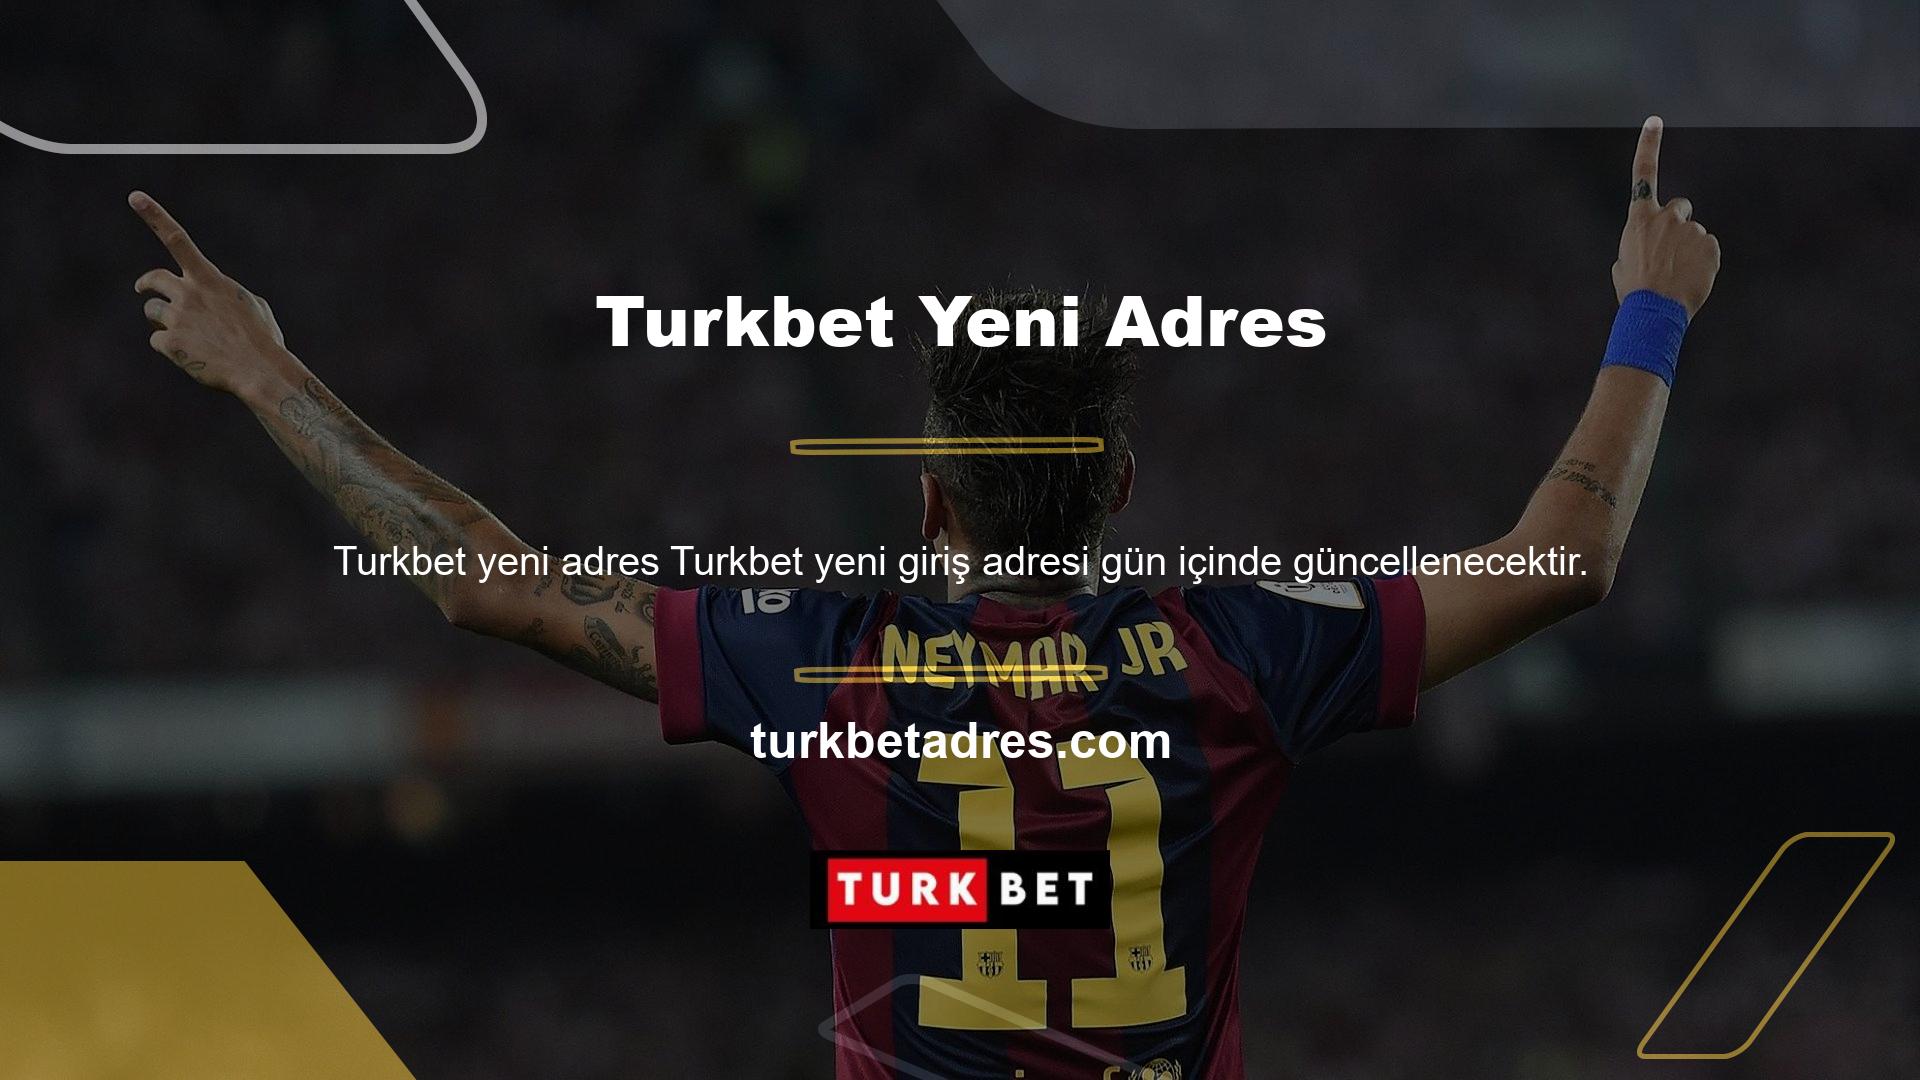 Turkbet Yeni Adres Yeni Erişim Adresi mobil uygulaması, canlı bahis sitesine kesintisiz erişim sağlar, üyeleri bilgilendirir ve yeni teknolojinin en iyi kullanıldığı oyunlara anında erişim sağlar